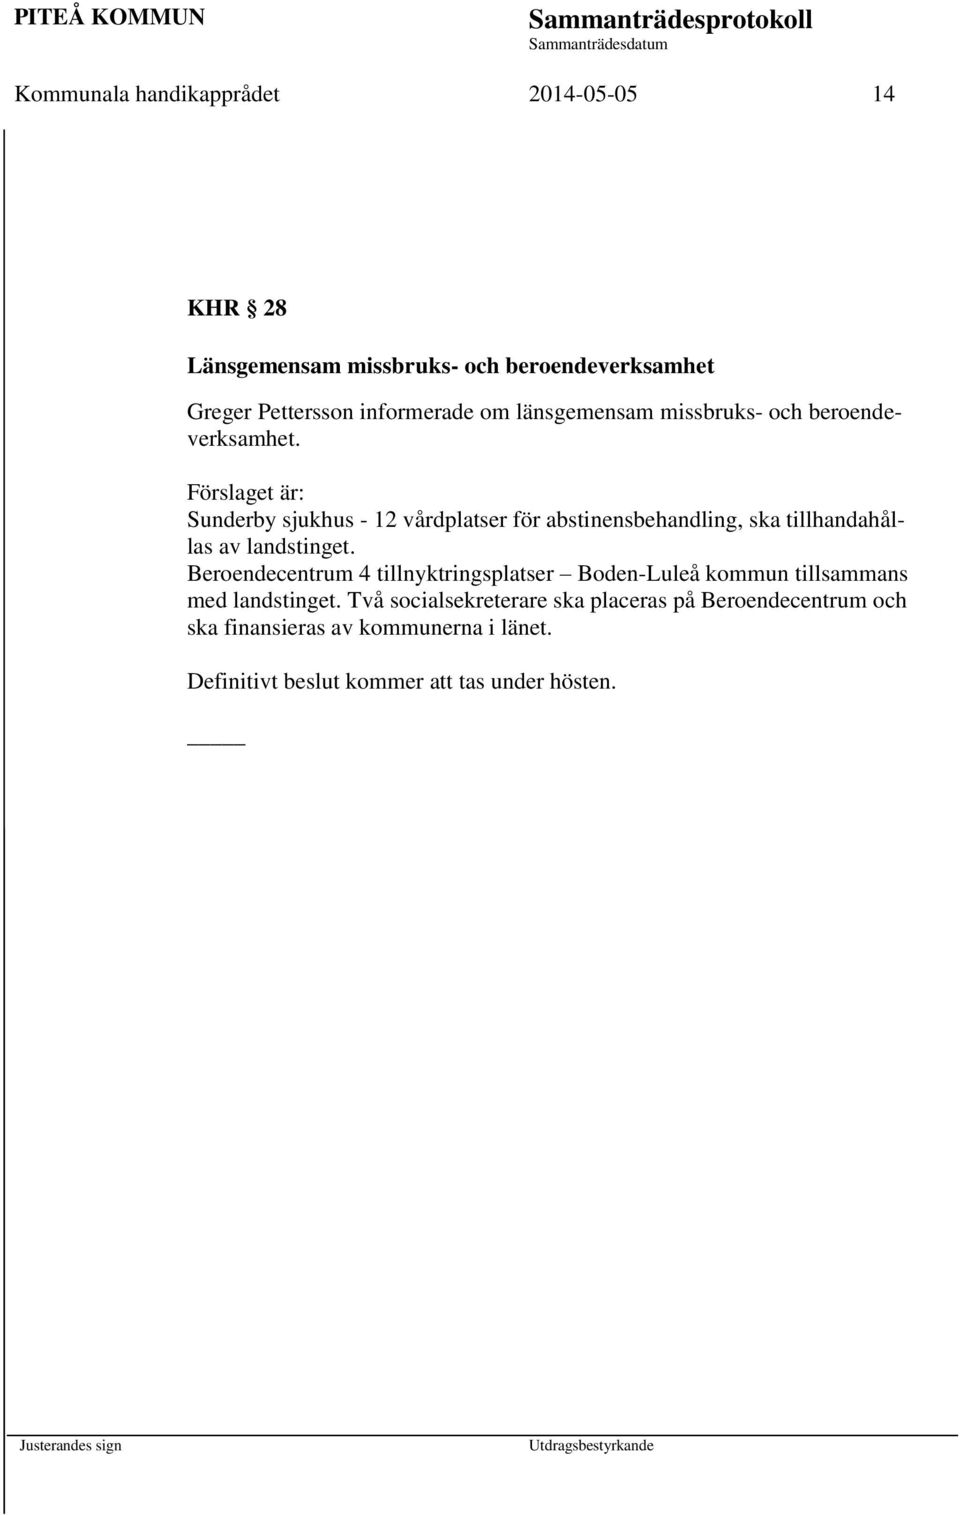 Förslaget är: Sunderby sjukhus - 12 vårdplatser för abstinensbehandling, ska tillhandahållas av landstinget.